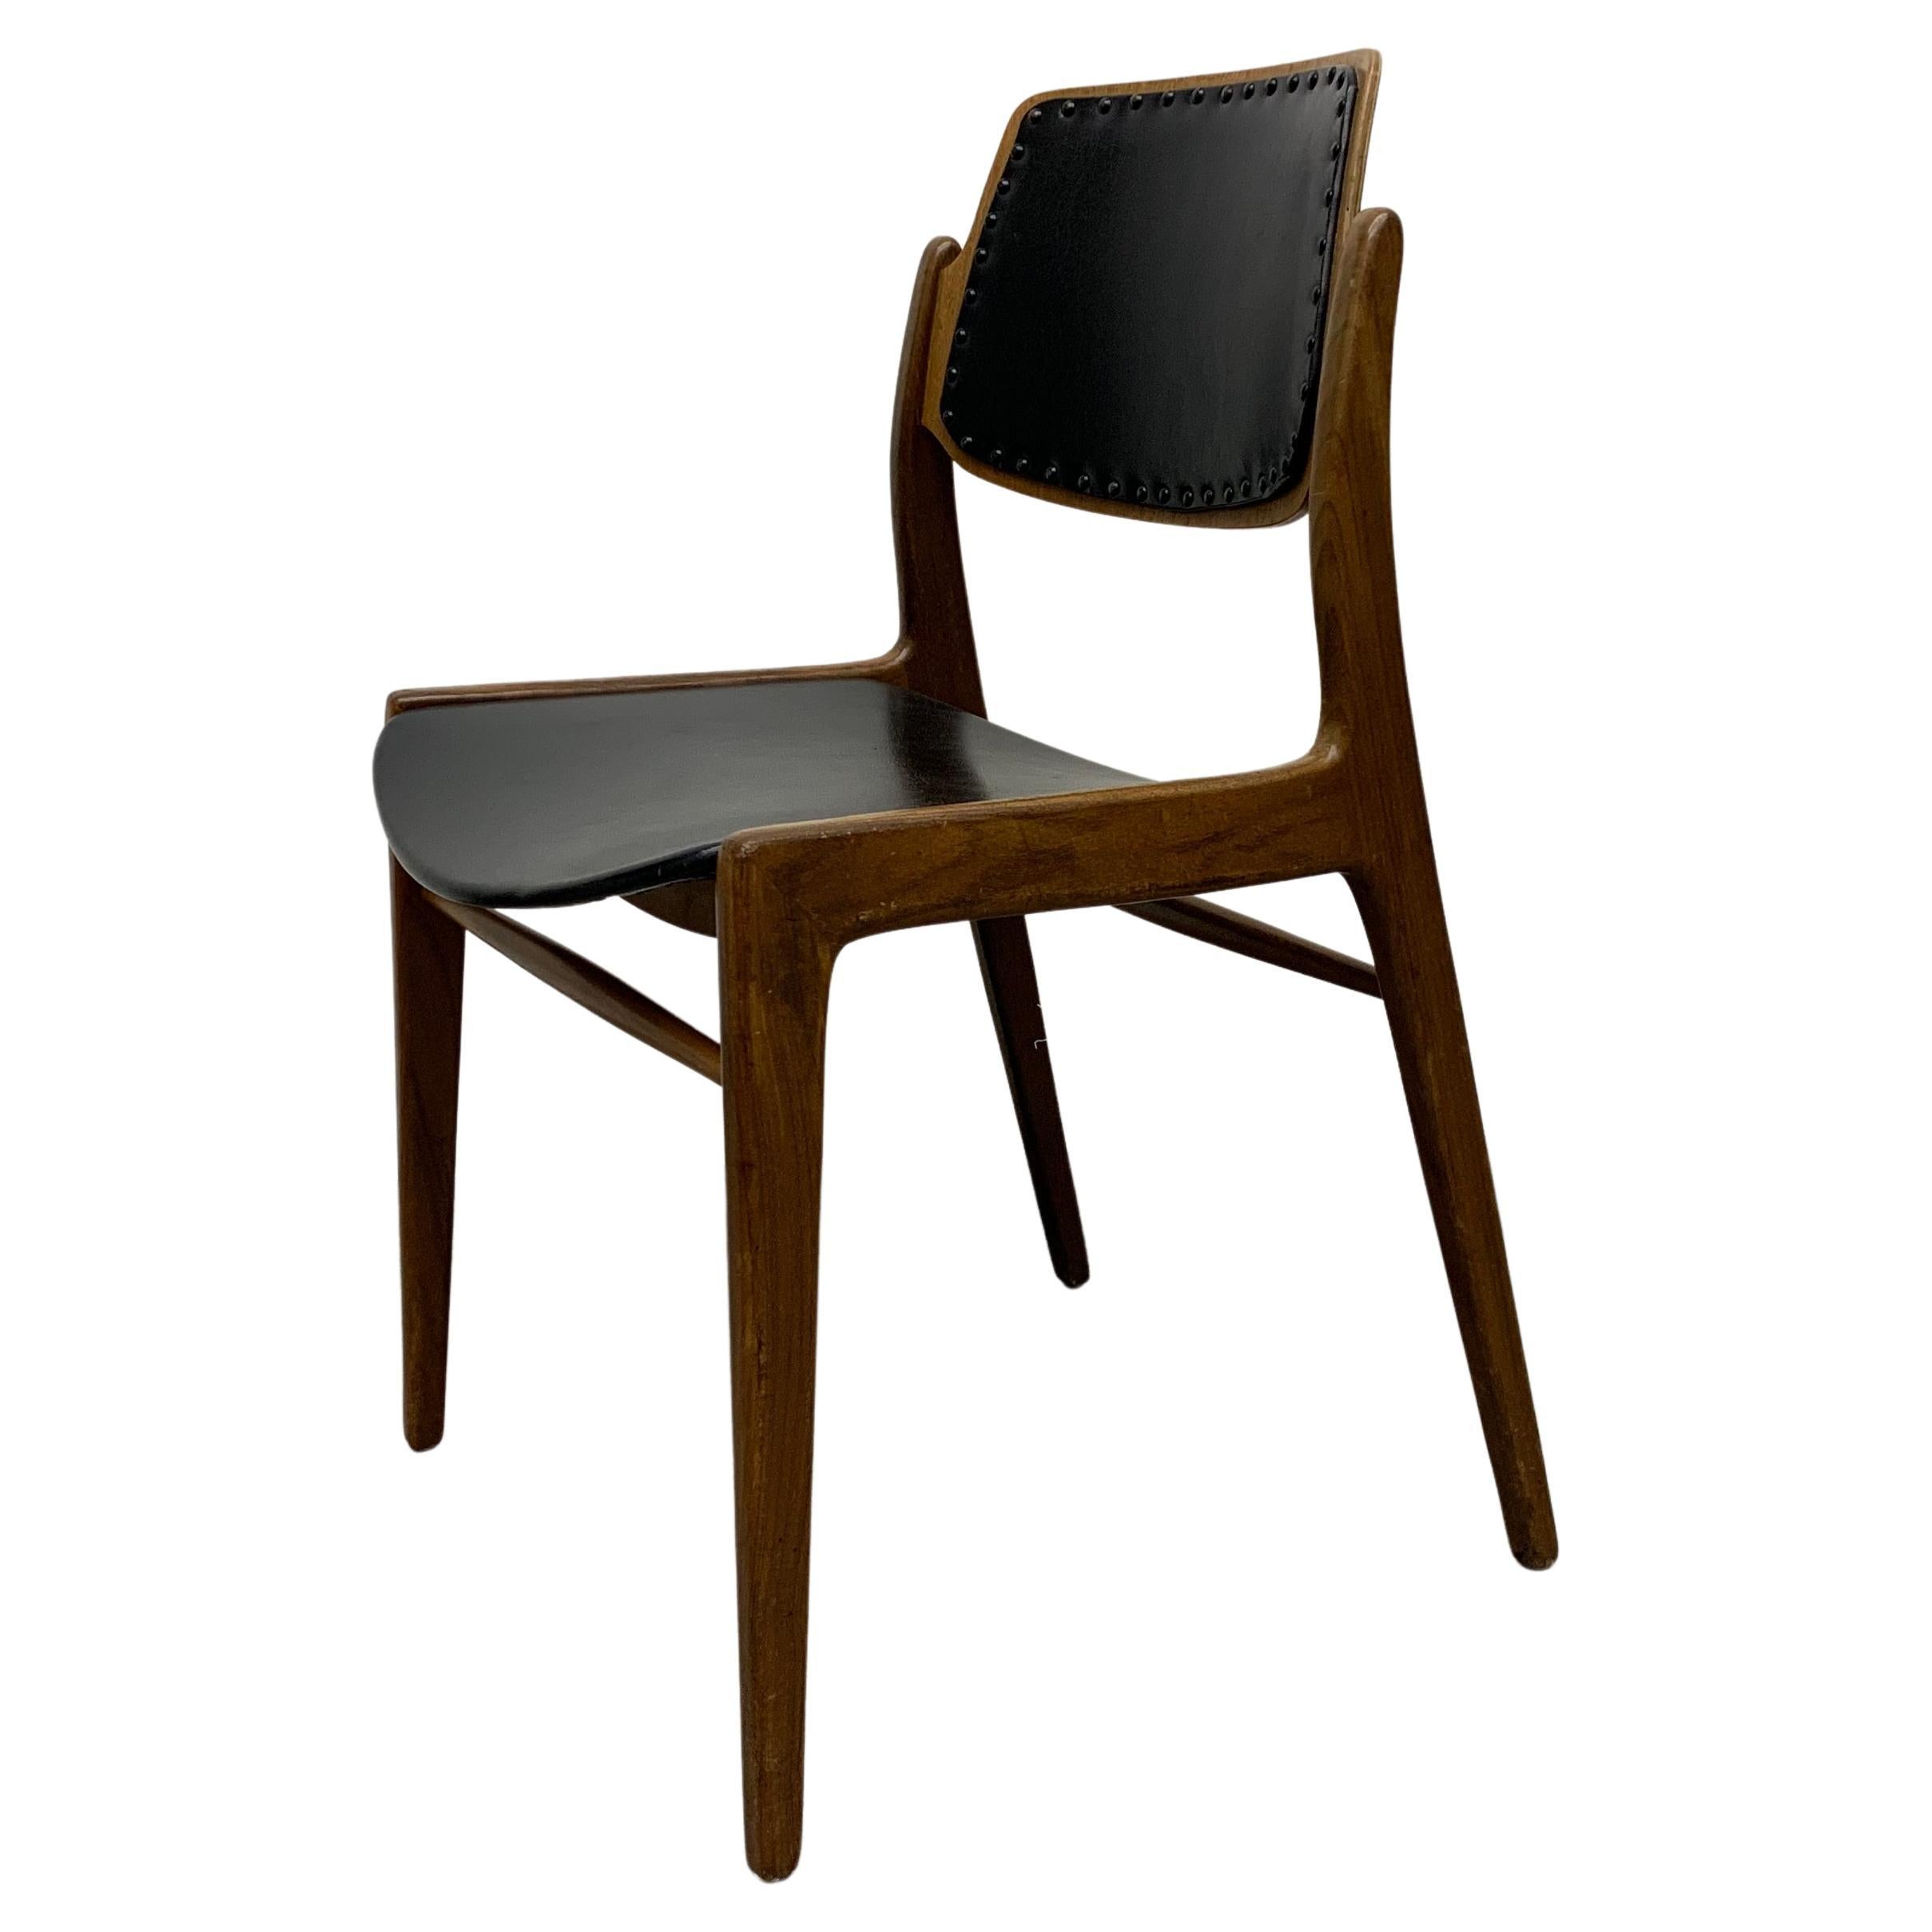 Hartmut Lohmeyer for Wilkhahn 1950's dining chair teak wood design